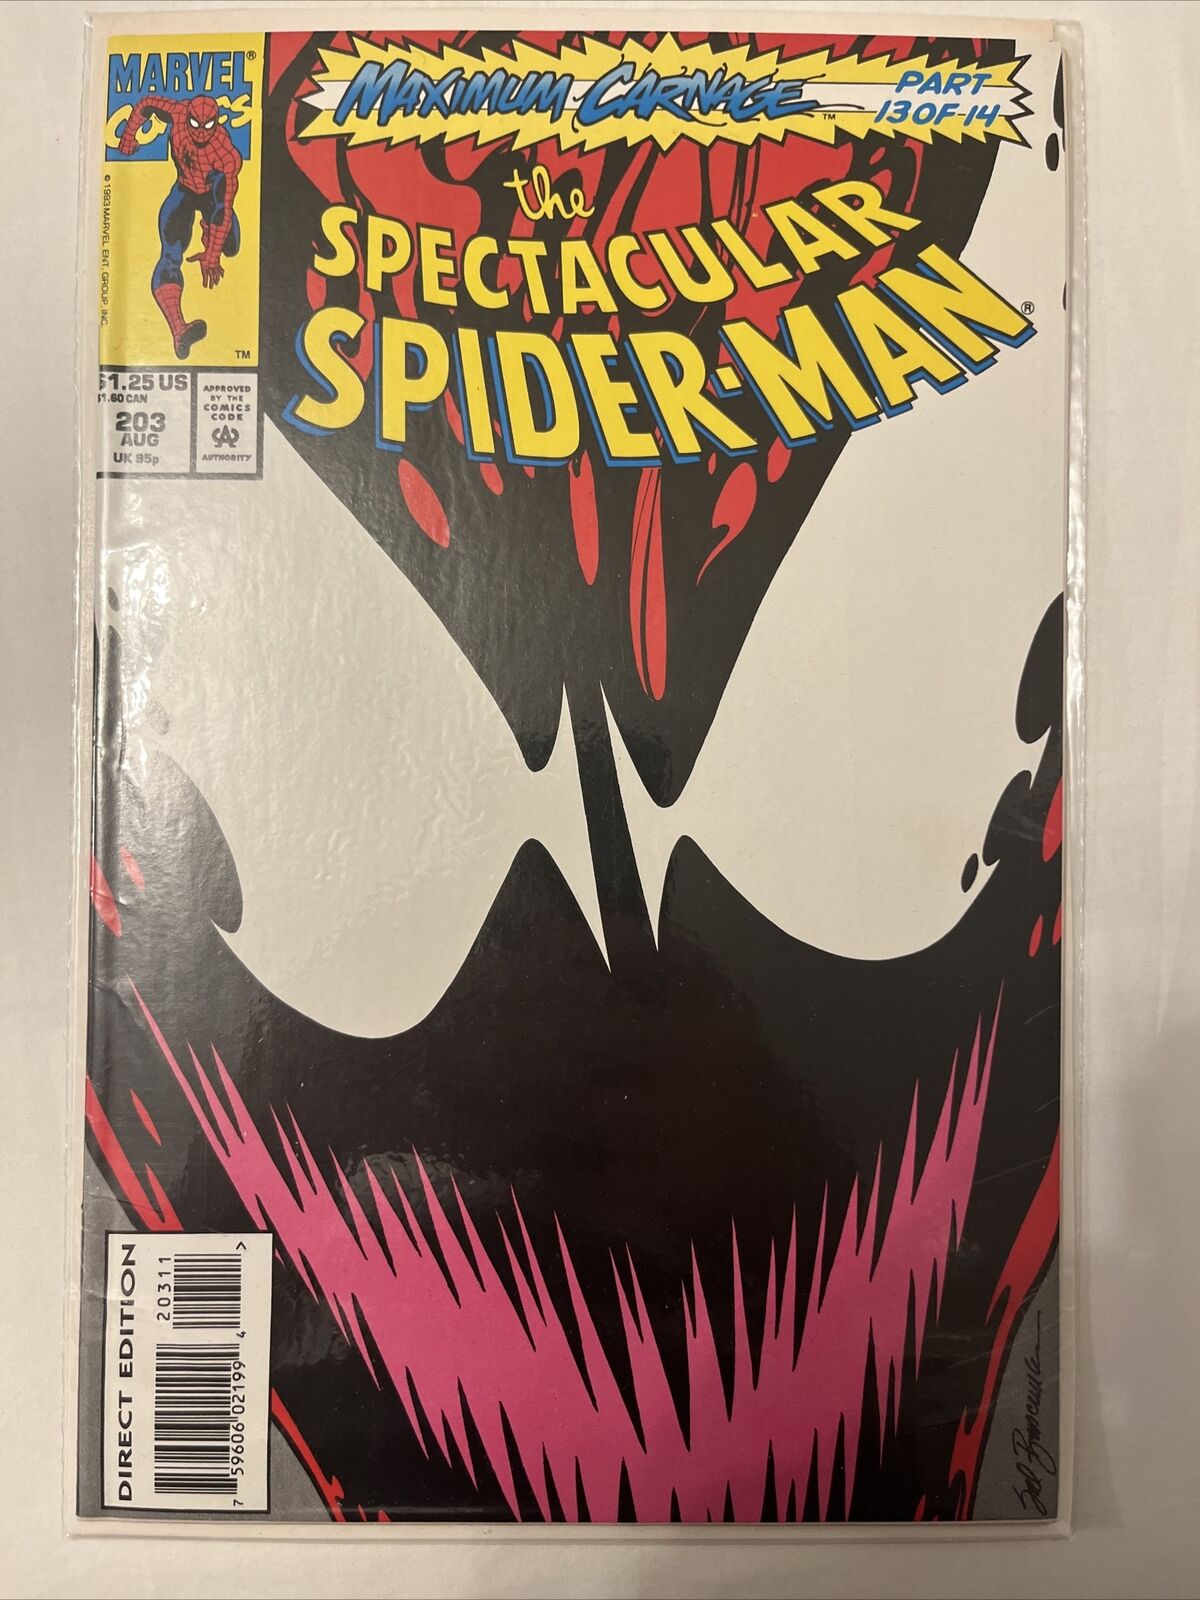 The Spectacular Spider-Man, Maximum Carnage Part 13